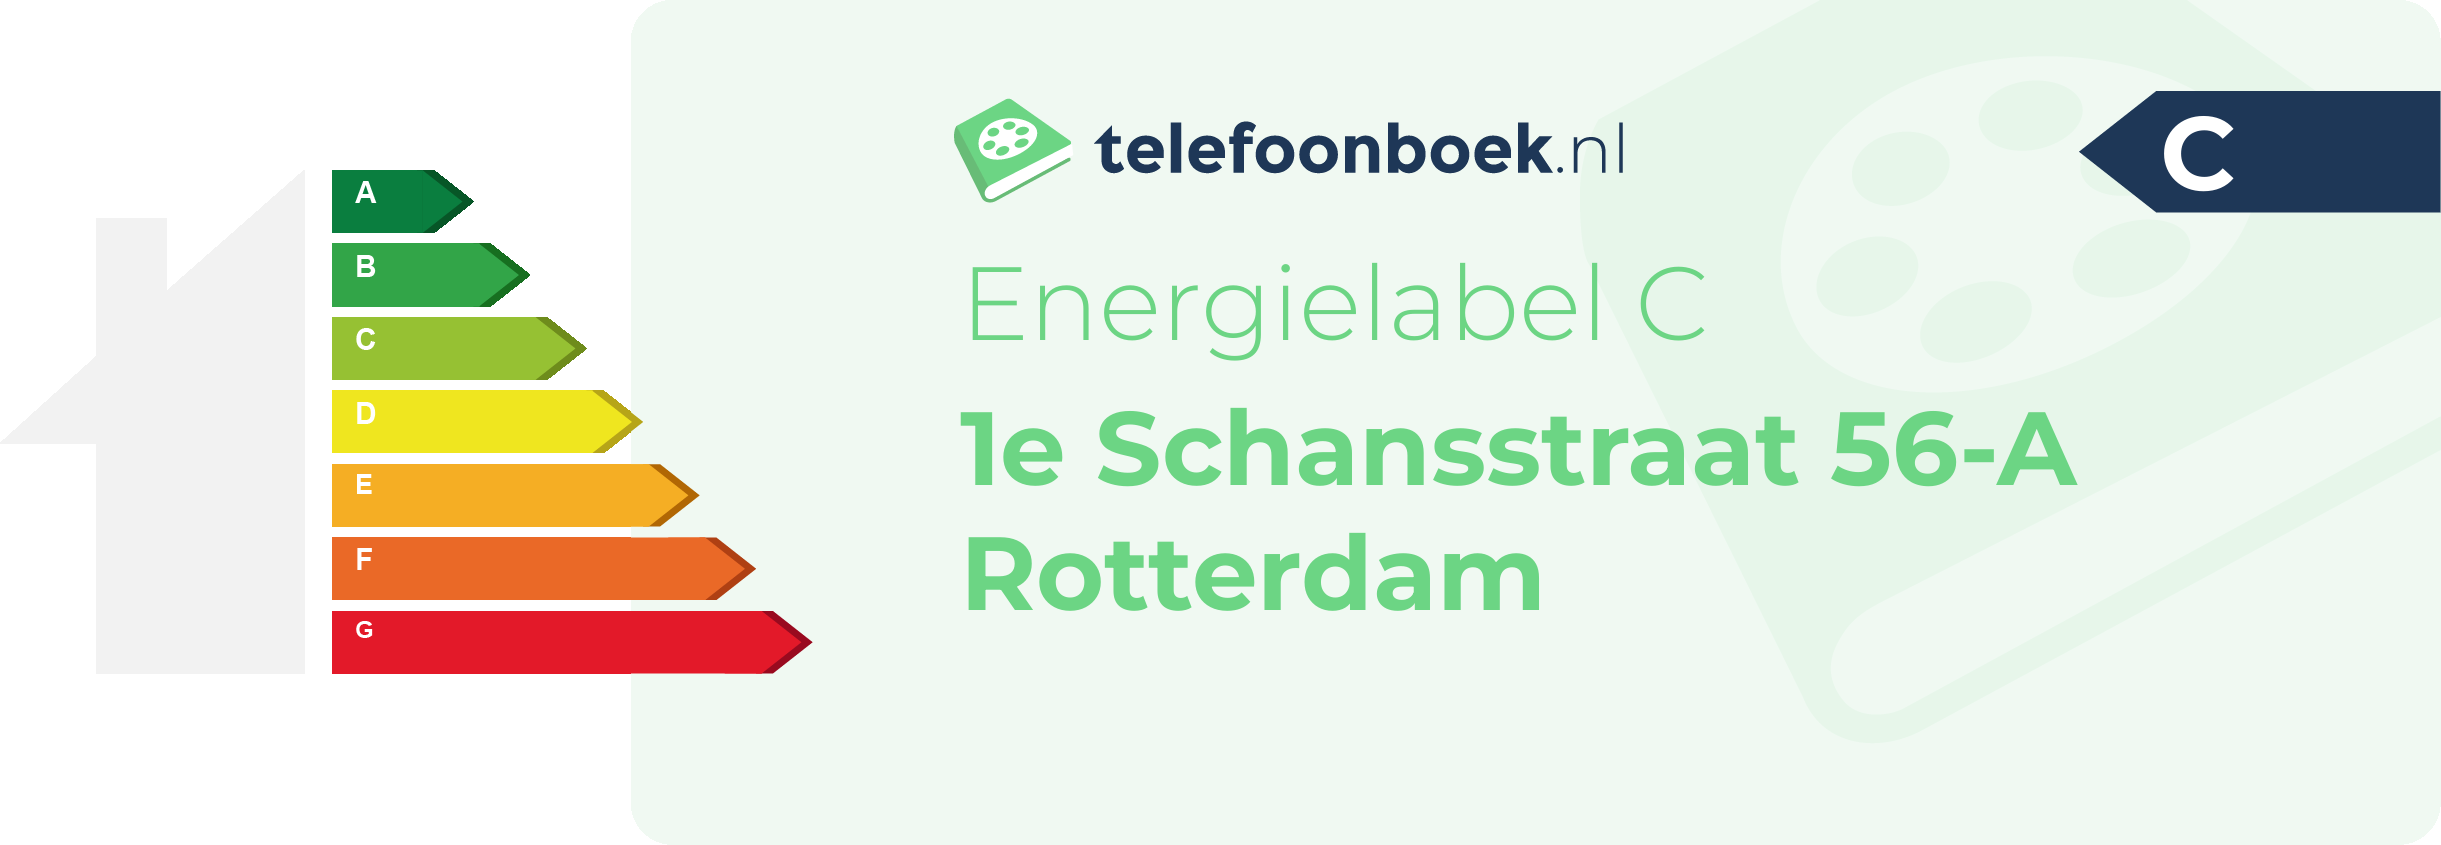 Energielabel 1e Schansstraat 56-A Rotterdam